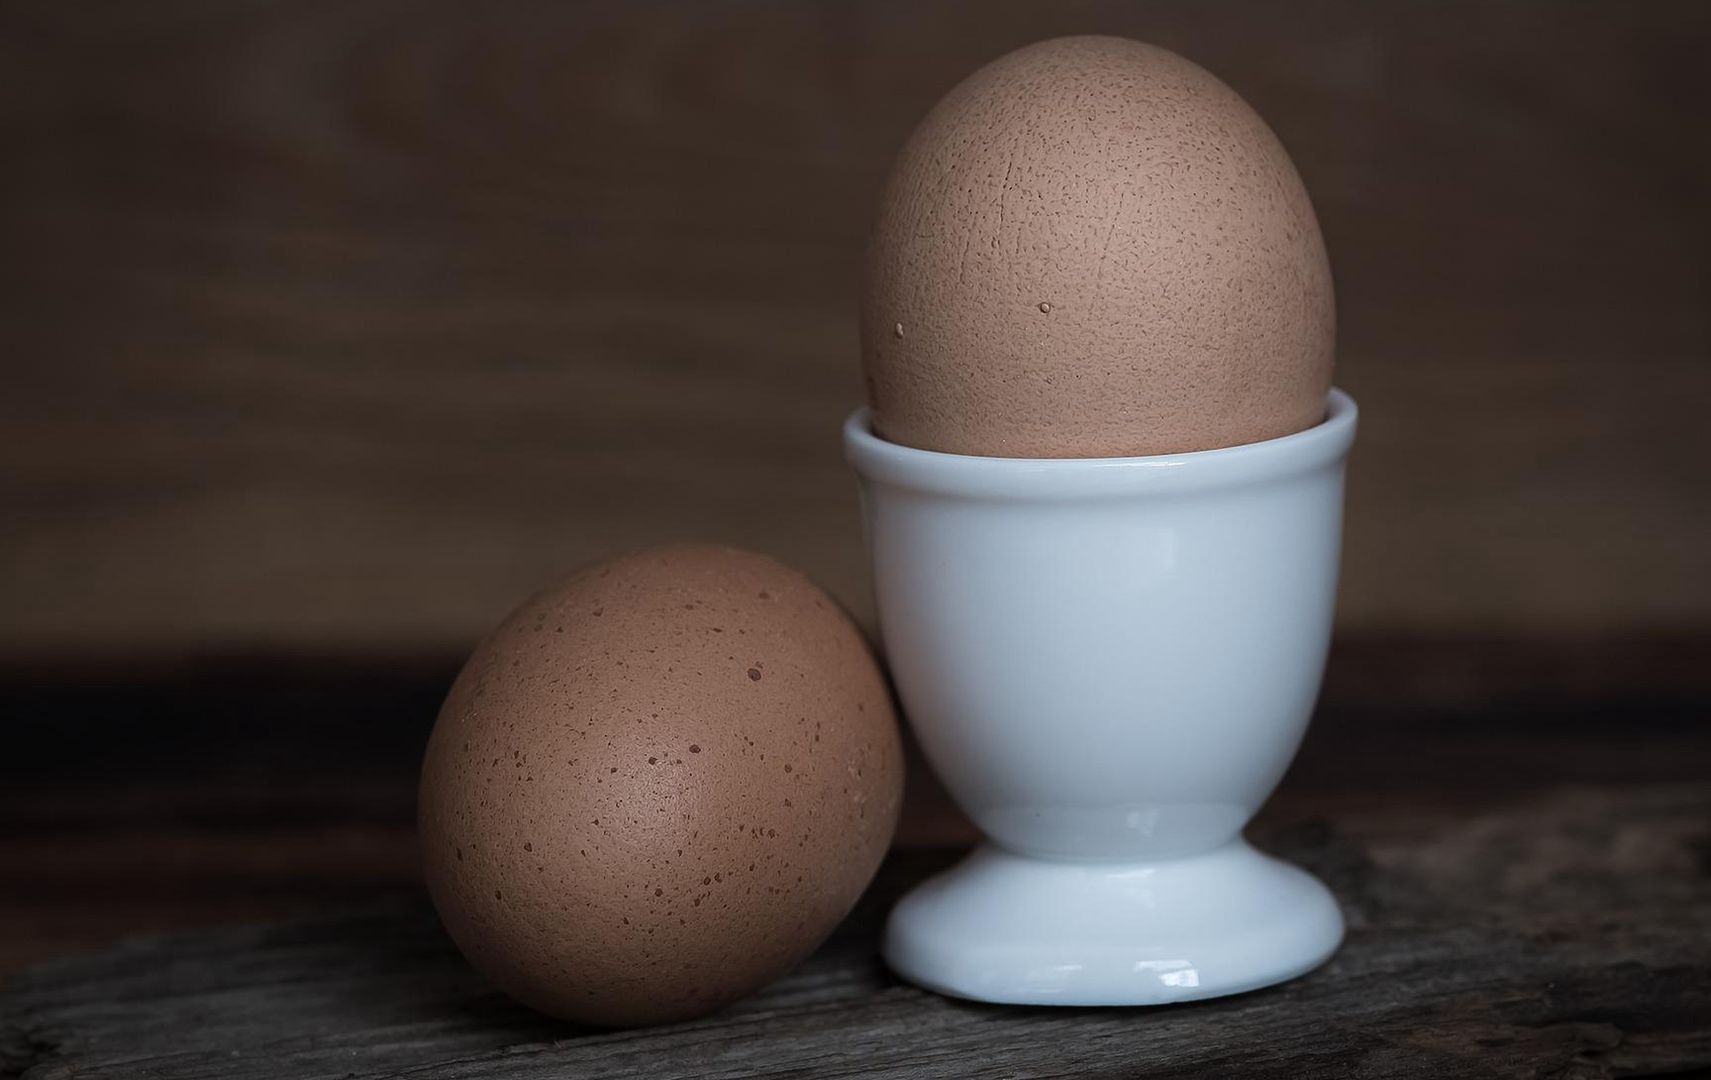 Jak szybko obrać jajko? Ten trik z TikToka to prawdziwy hit. Przyda się na Wielkanoc